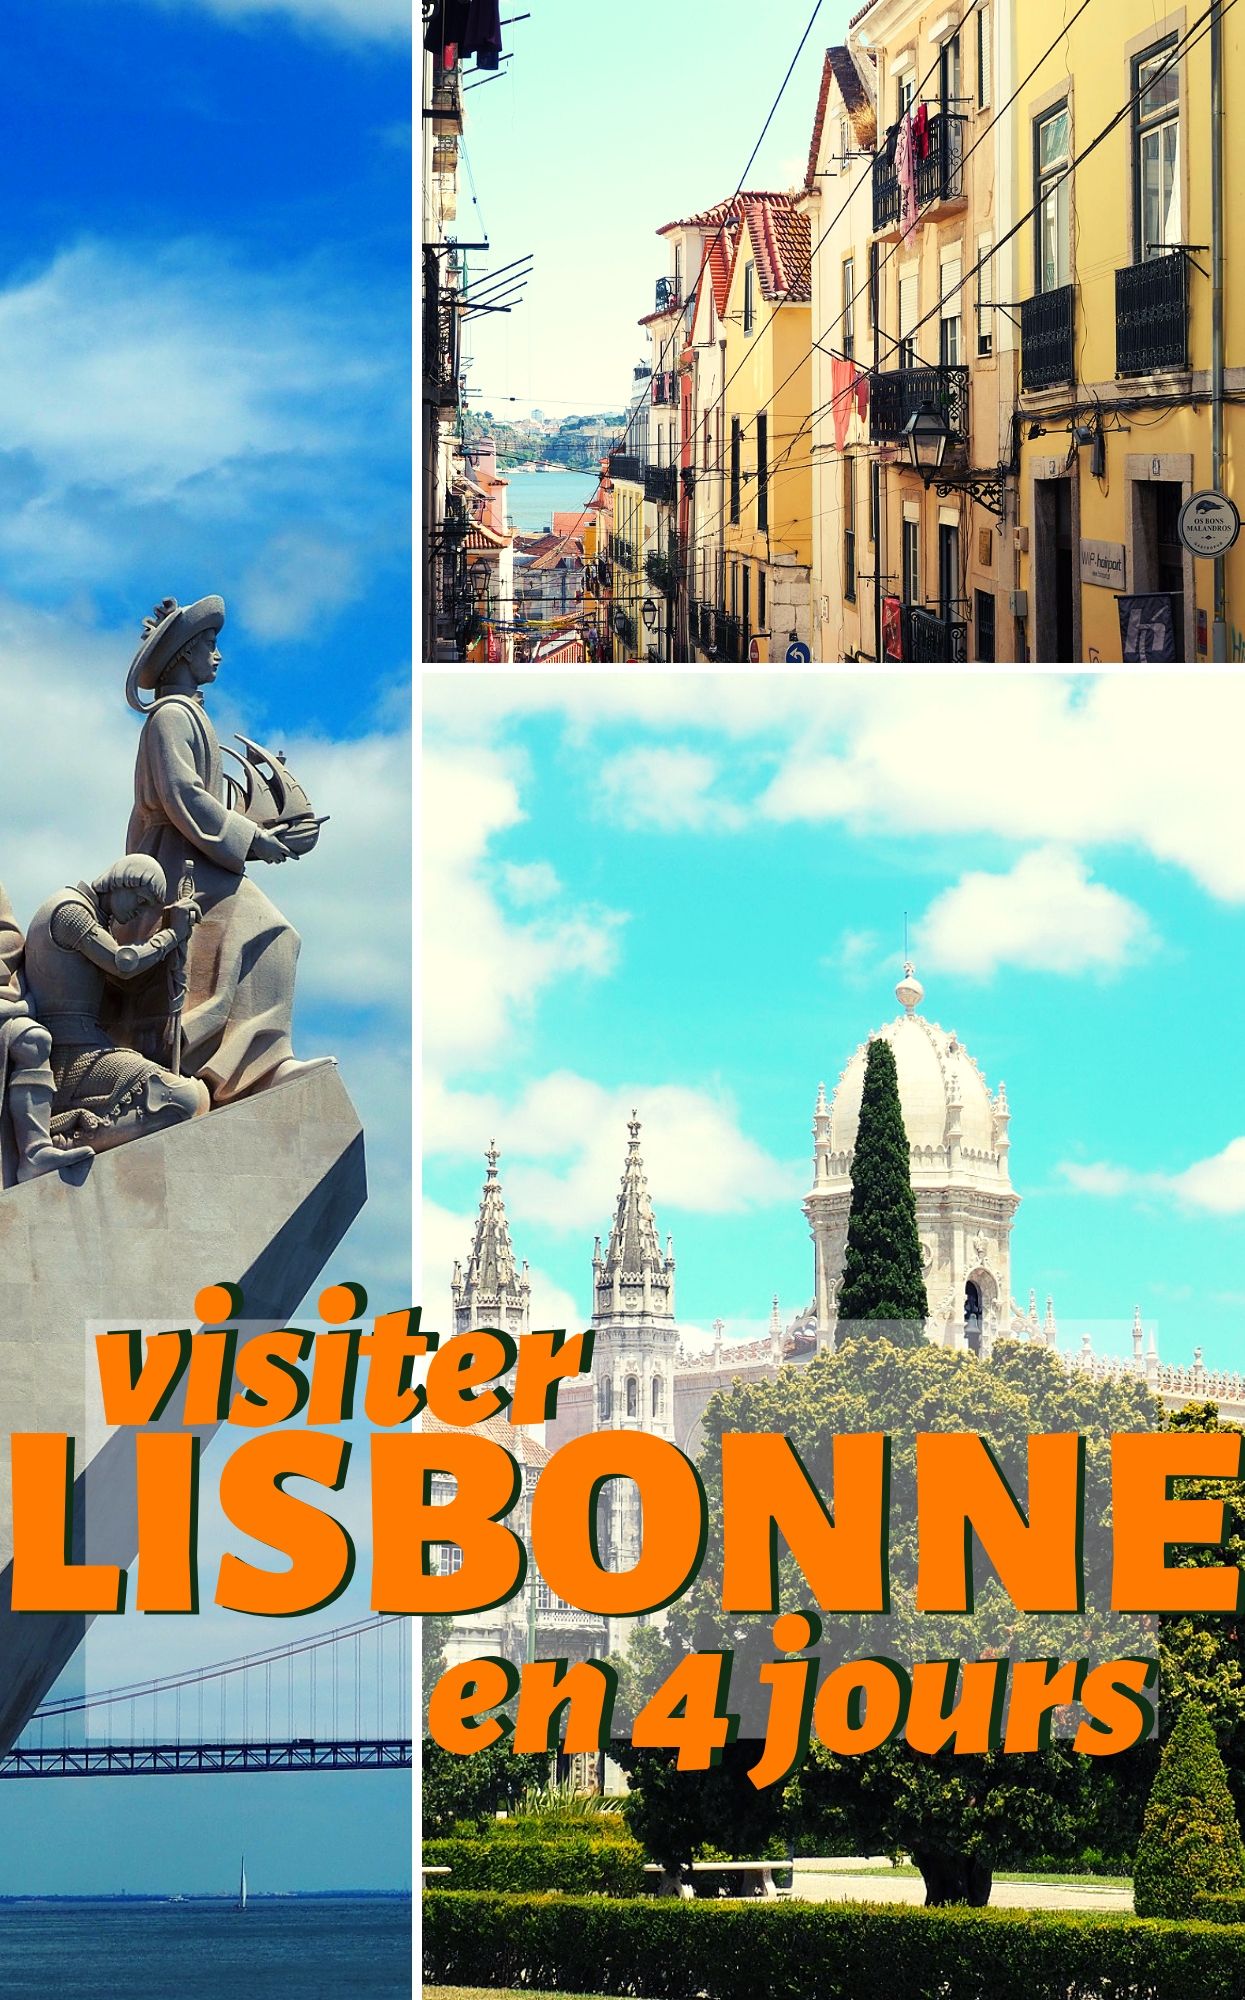 Vous allez visiter Lisbonne en 4 jours ? Je partage ici mes expériences et une liste de lieux incontournables à découvrir lors d’un voyage dans la capitale portugaise. 